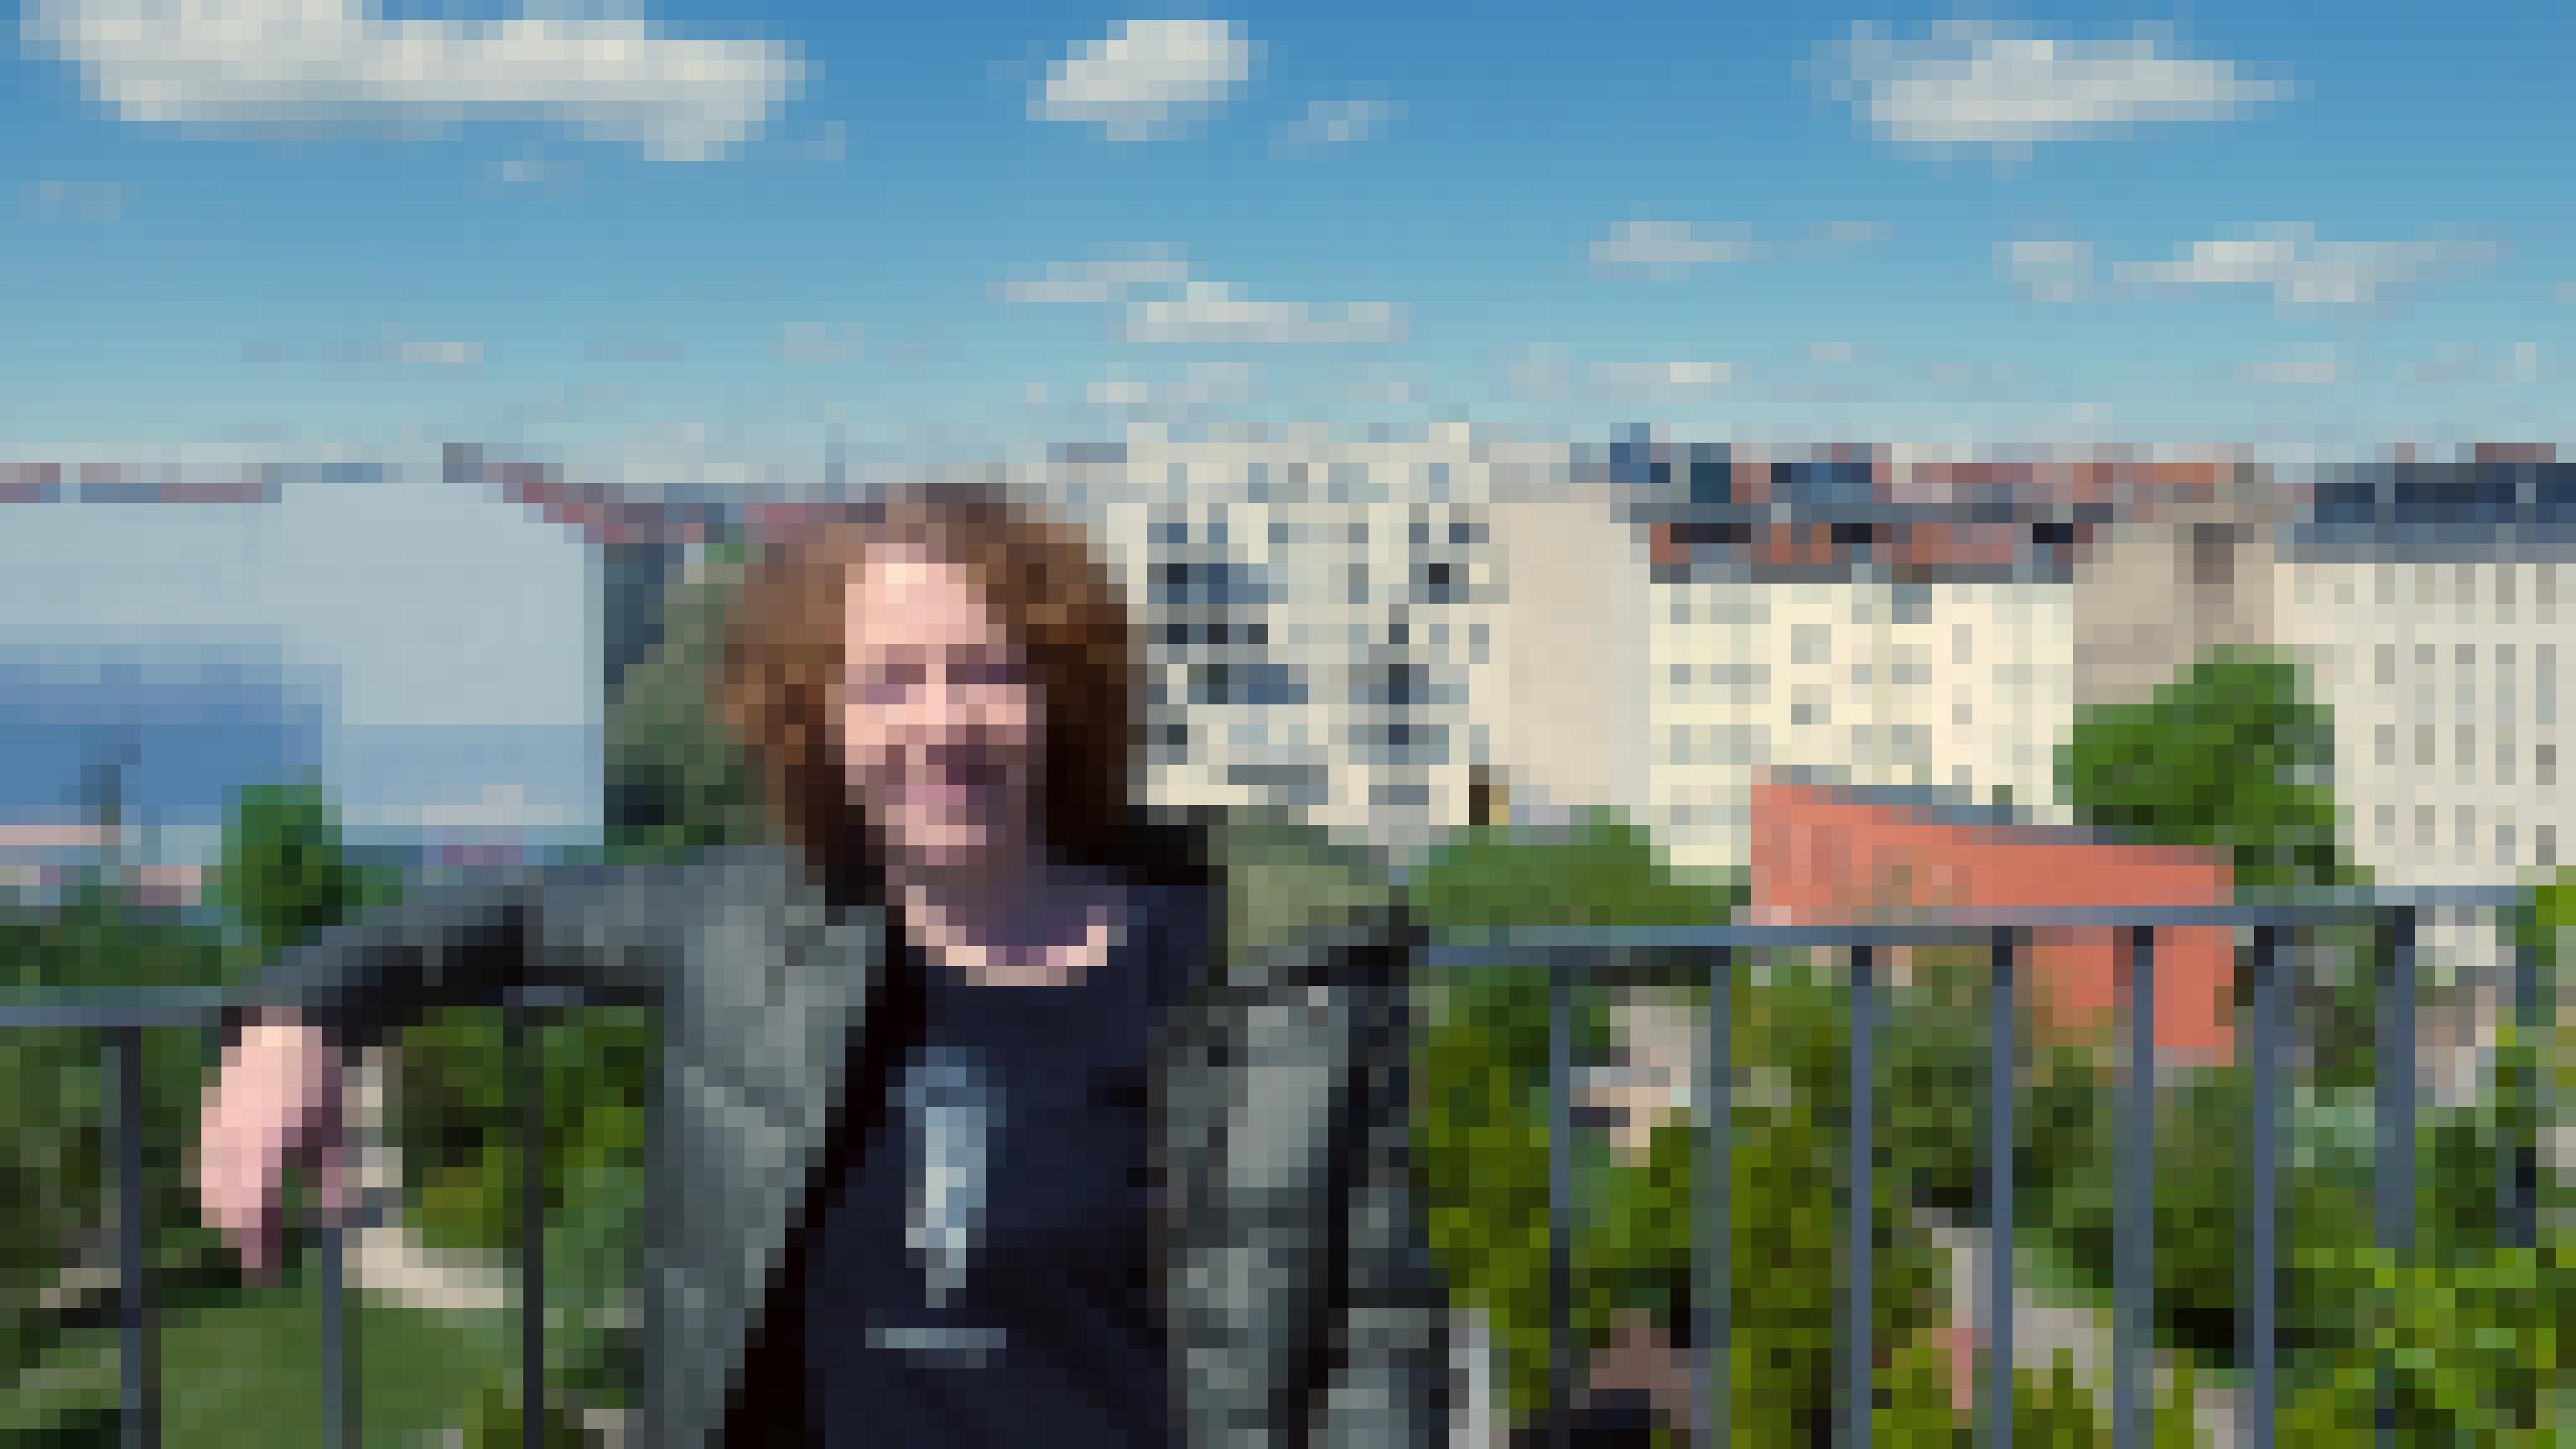 Christiane Habermalz lehnt an einem Geländer. Im Hintergrund sieht man einen Park und mehrstöckige Wohnhäuser.